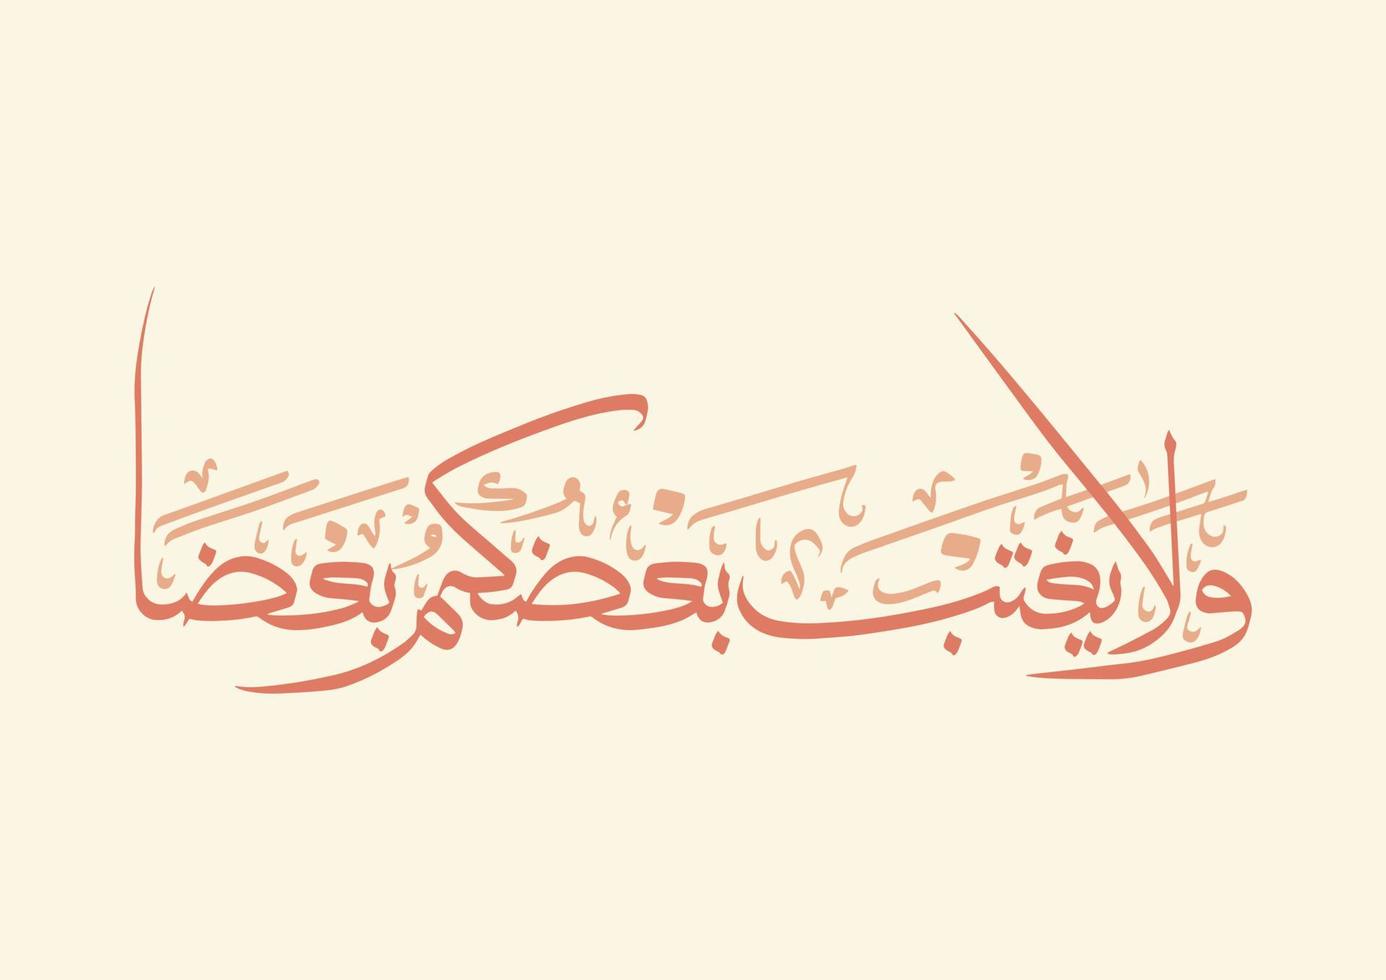 caligrafía árabe del verso del corán. traducido como no chismes sobre algunos de ustedes a los demás. vector